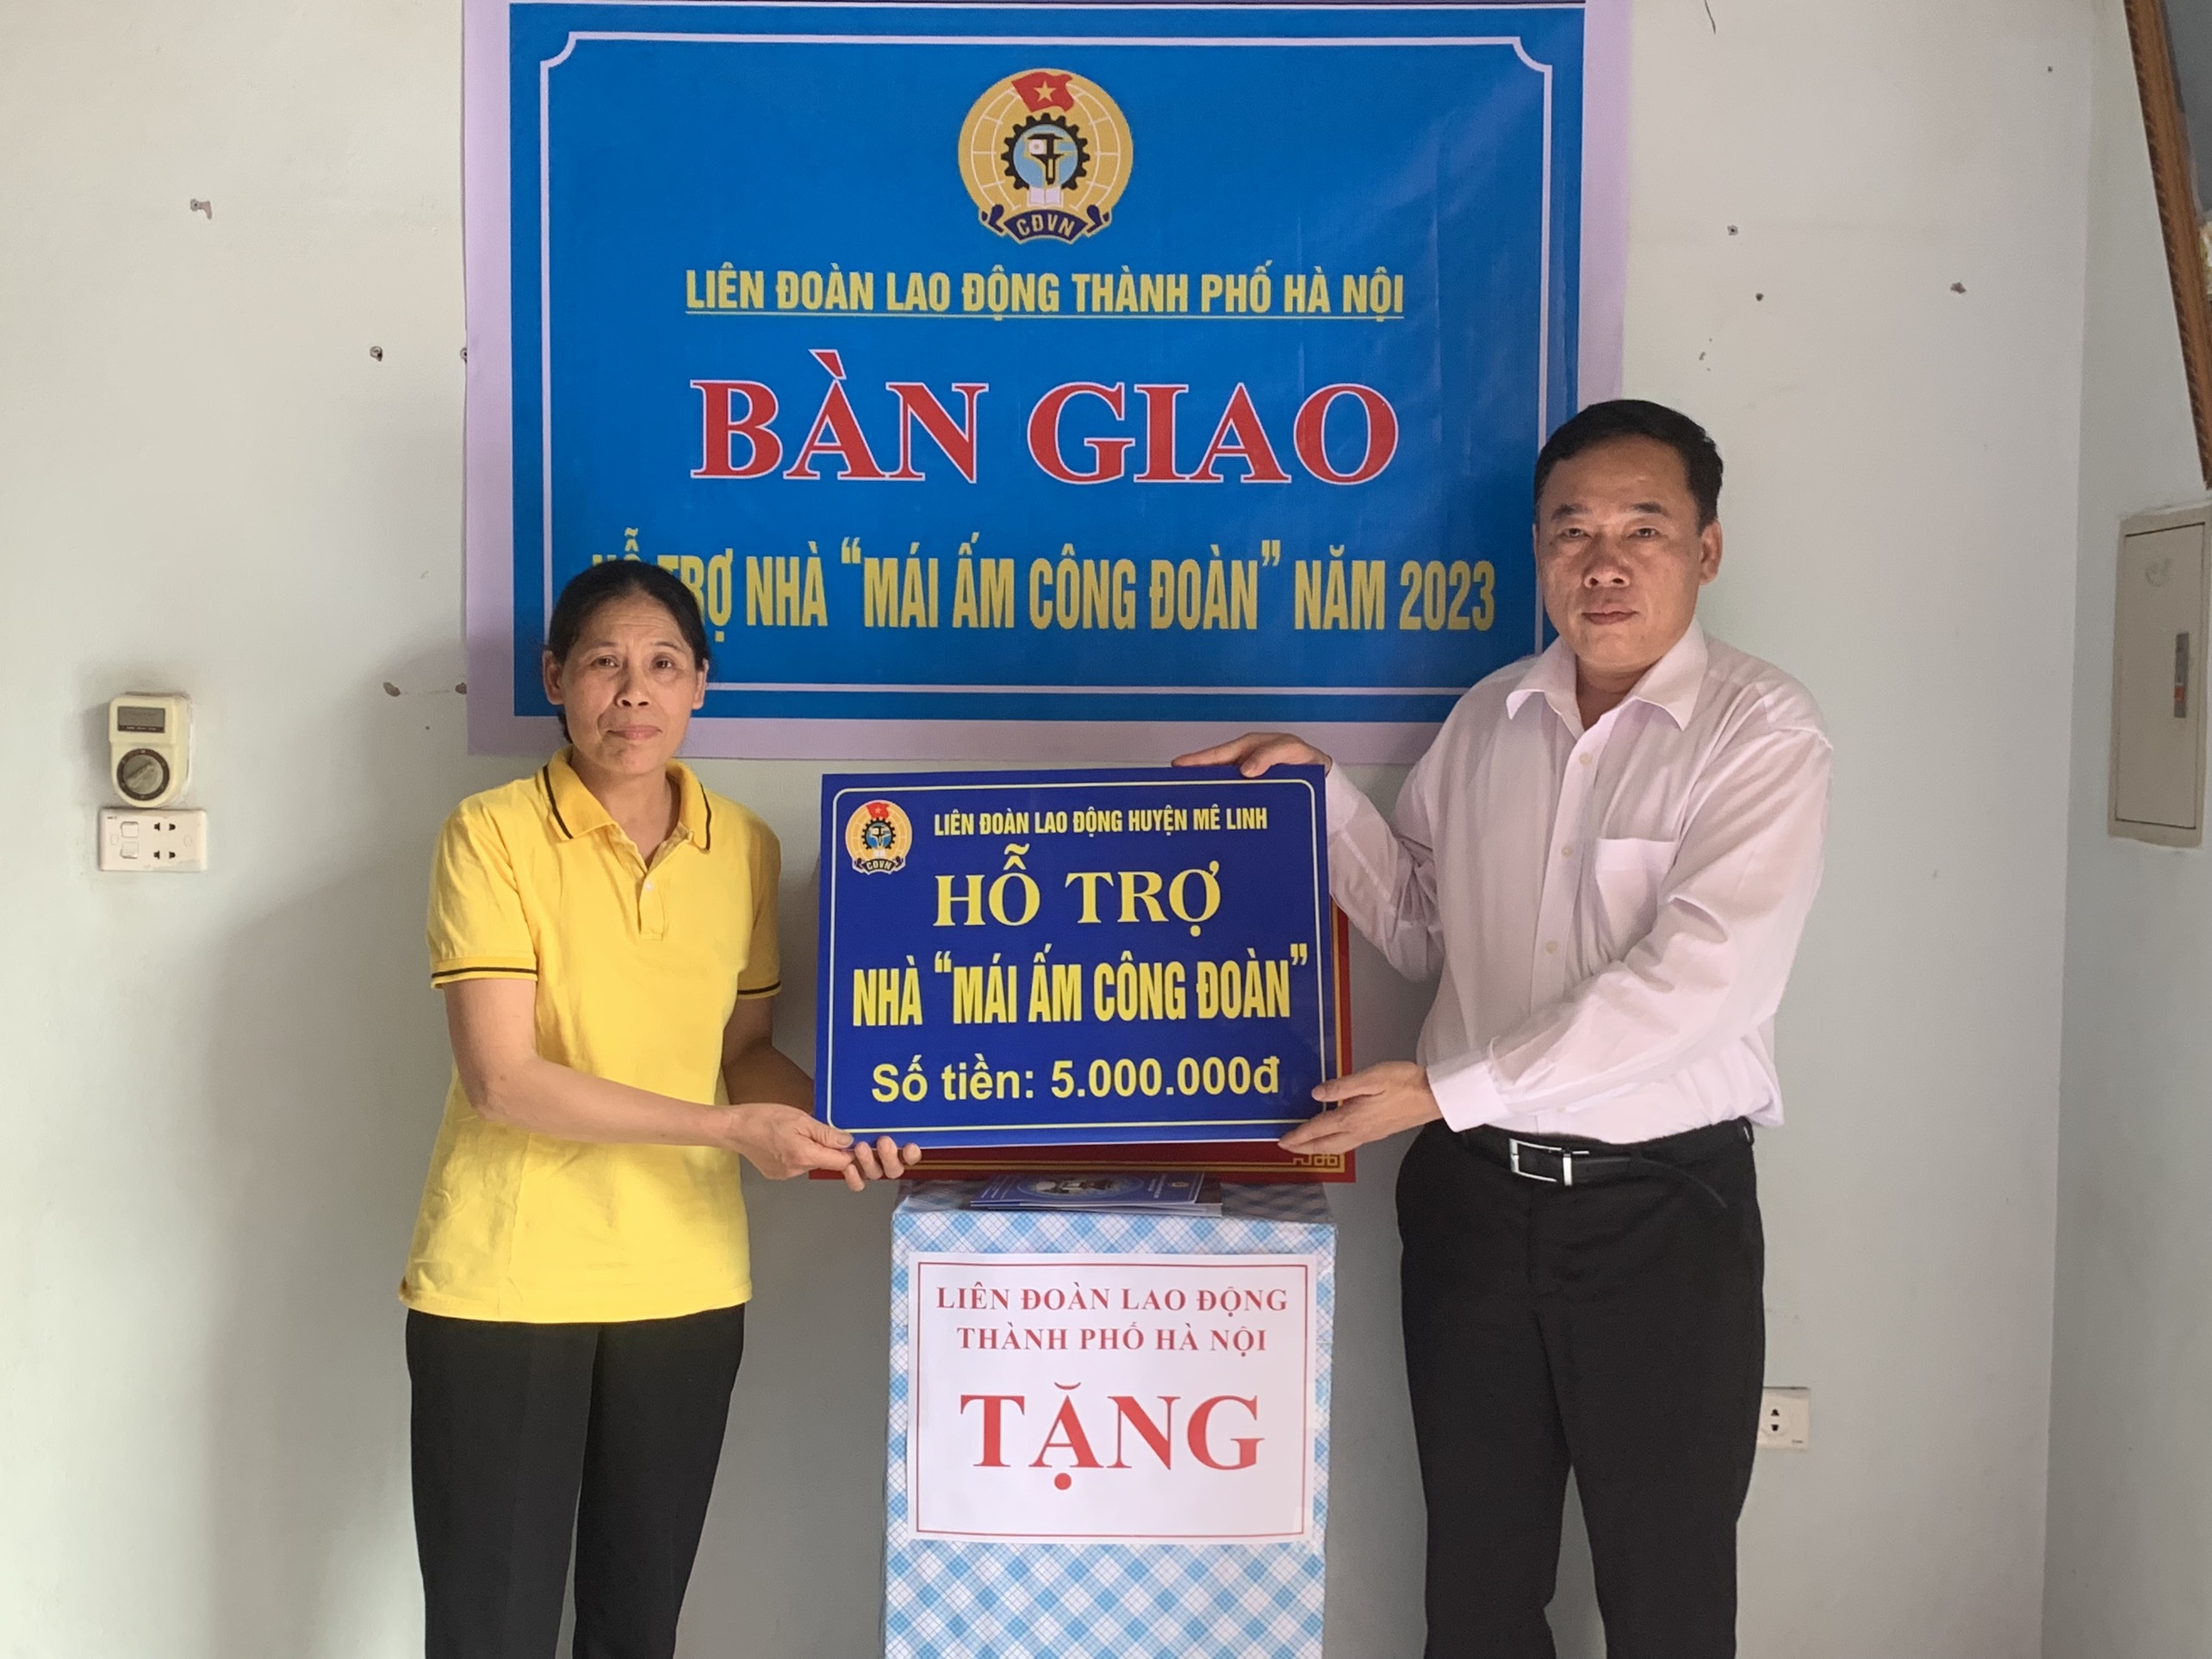 Trao hỗ trợ kinh phí sửa chữa nhà “Mái ấm Công đoàn” cho đoàn viên huyện Mê Linh